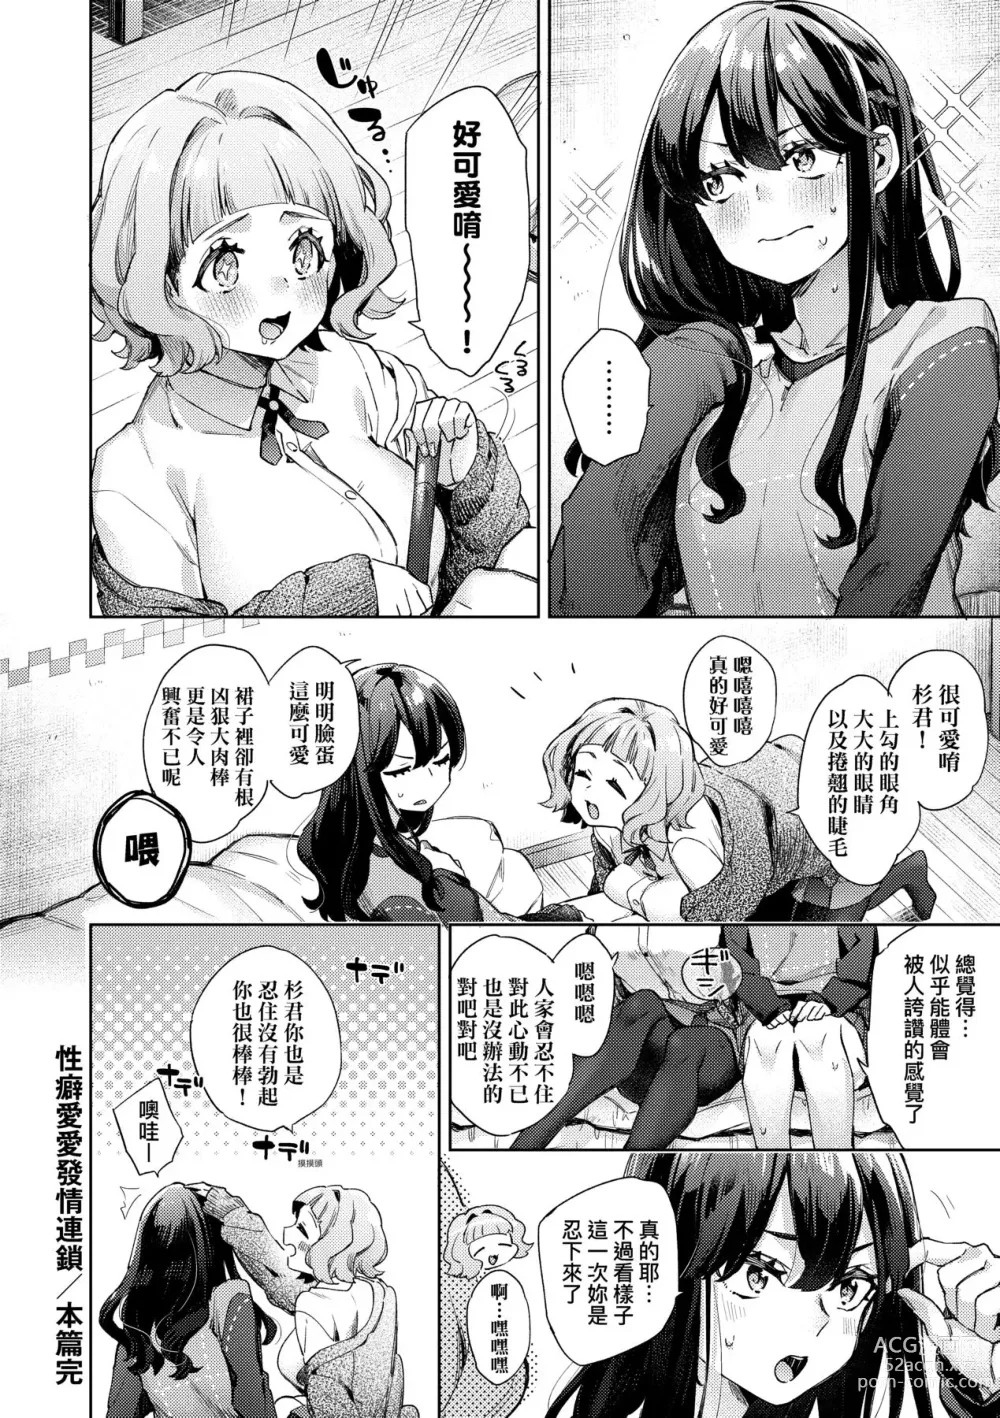 Page 27 of manga Joshikousei ga Seifuku Sugata de Ecchi na Koto o Shiteiru you desu! (decensored)